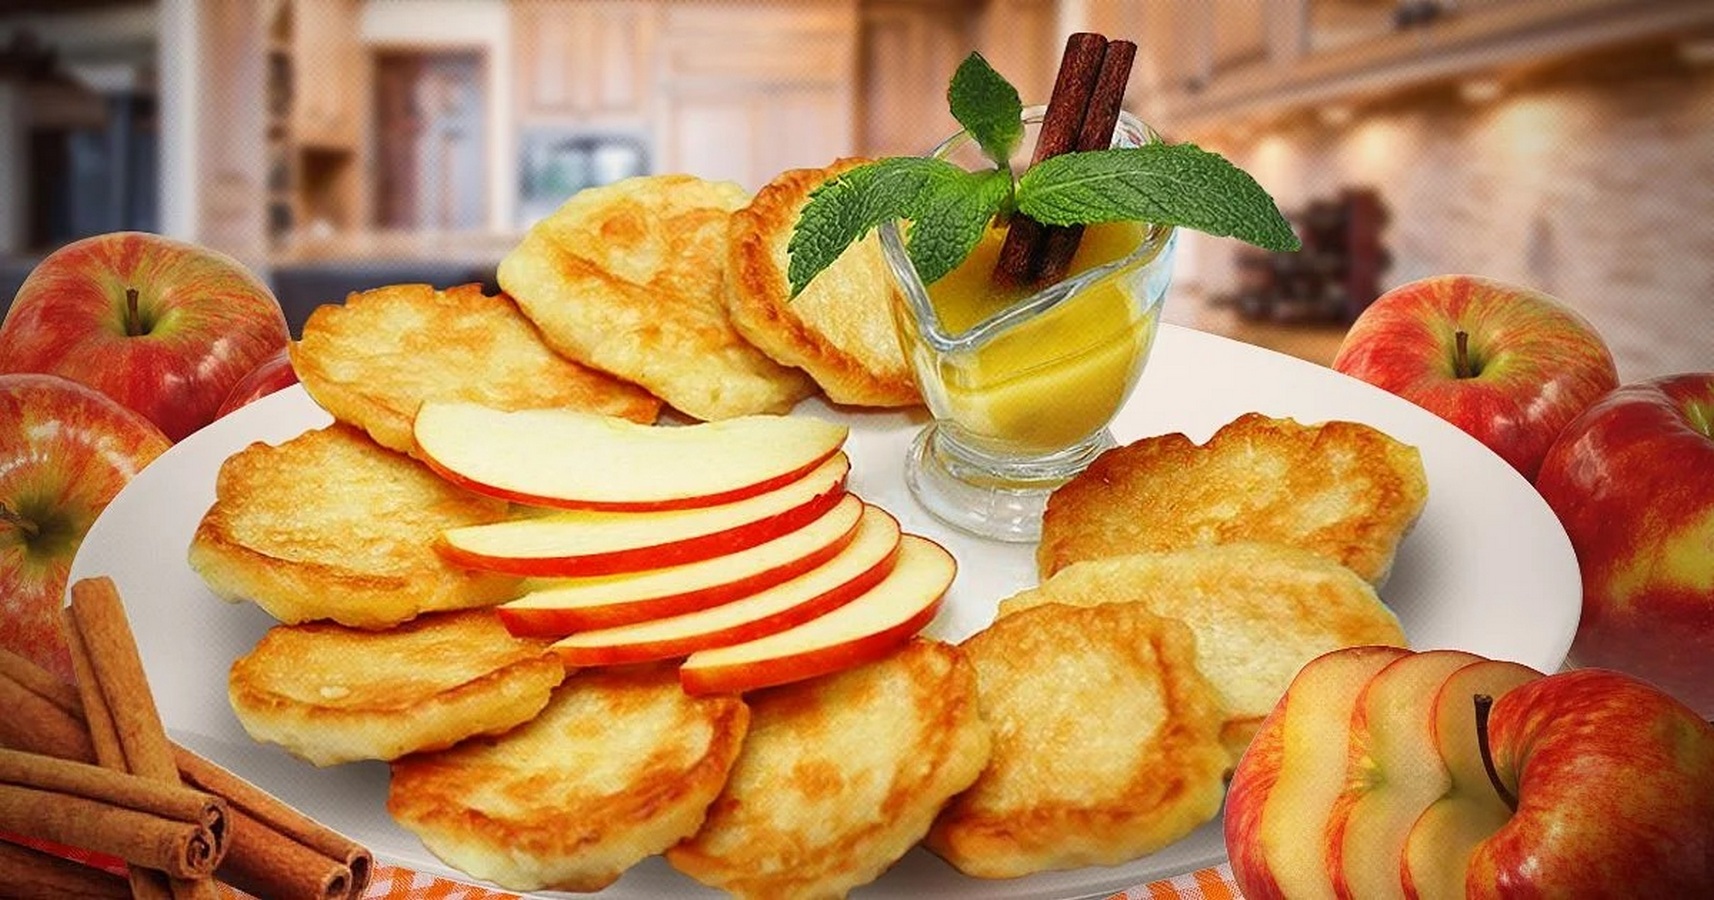 Завтрак 2 яблока. Яблочные оладьи. Пышные оладьи с яблоками. Яблочное творожные аладьи. Оладьи с яблоками на кефире.